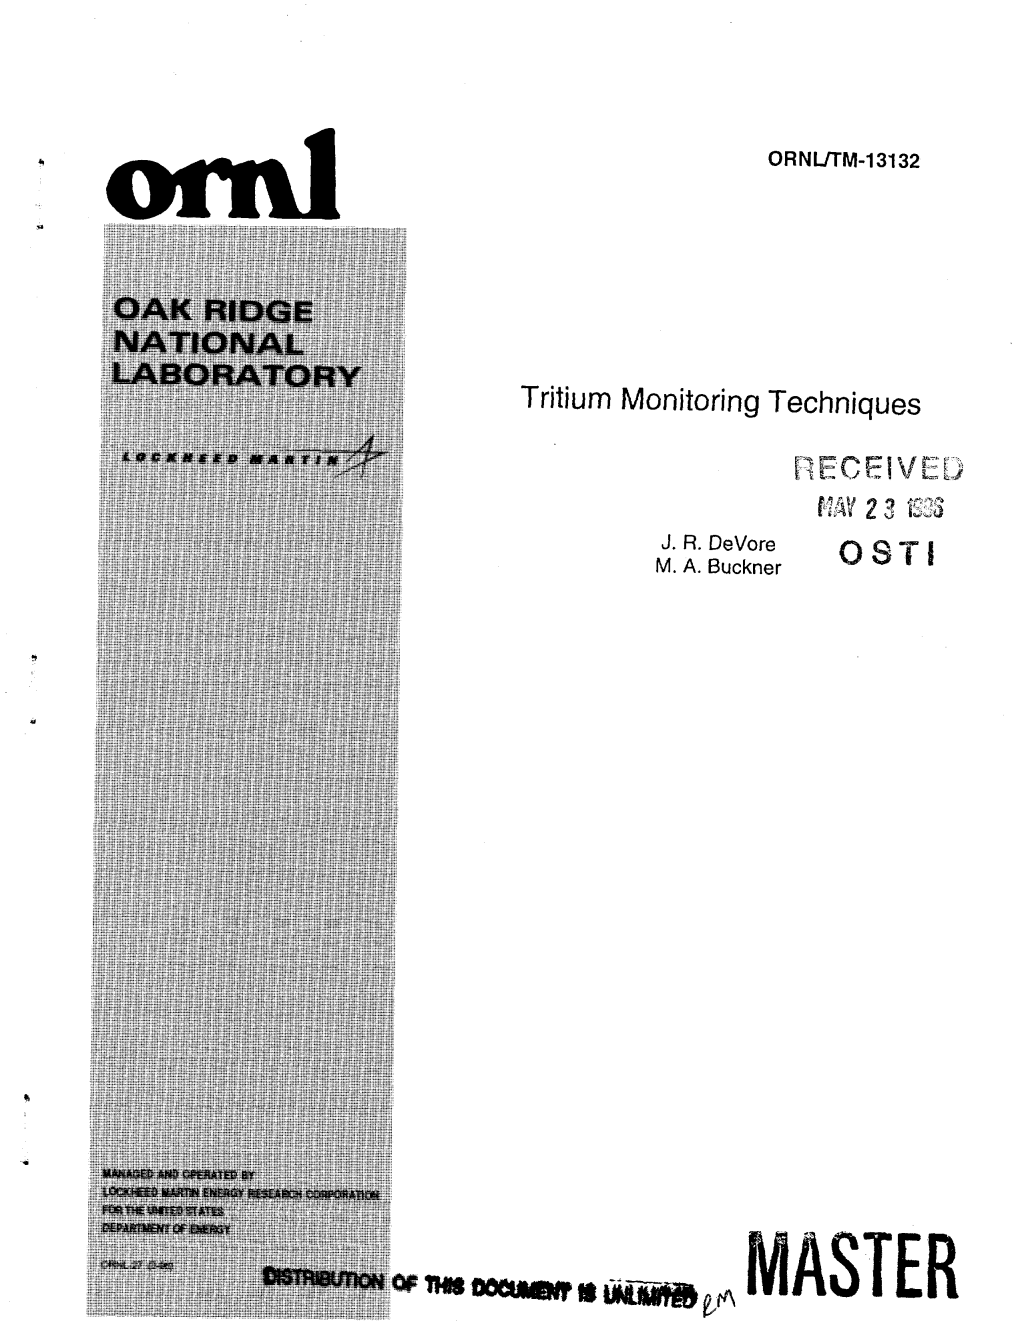 Tritium Monitoring Techniques 4, LOCKH K K D MARTIH' -/"* RECEIVE!! MAY 2 3 638 J